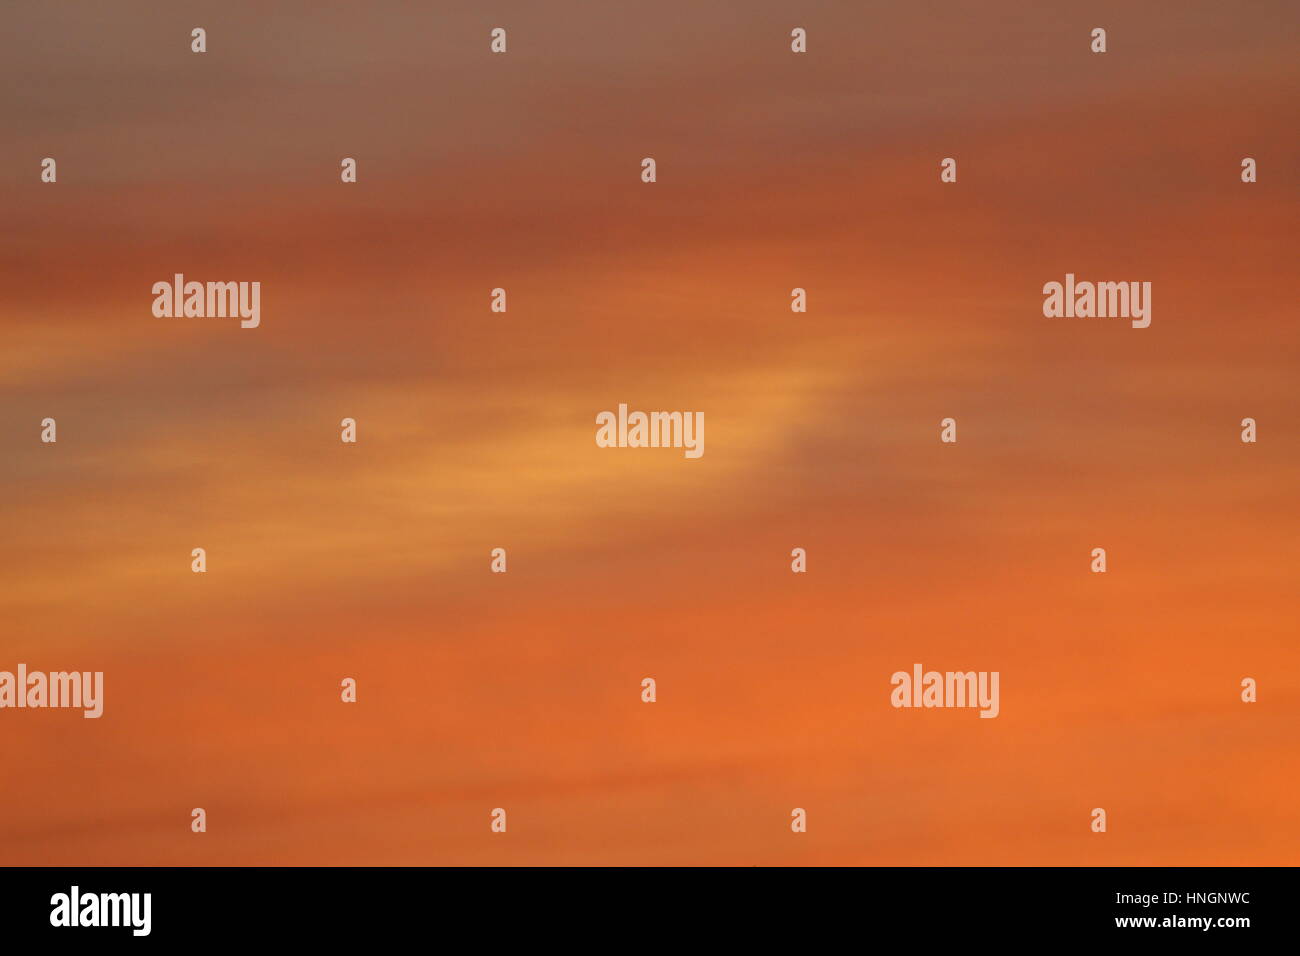 Orange Smooth Sunset or background Stock Photo